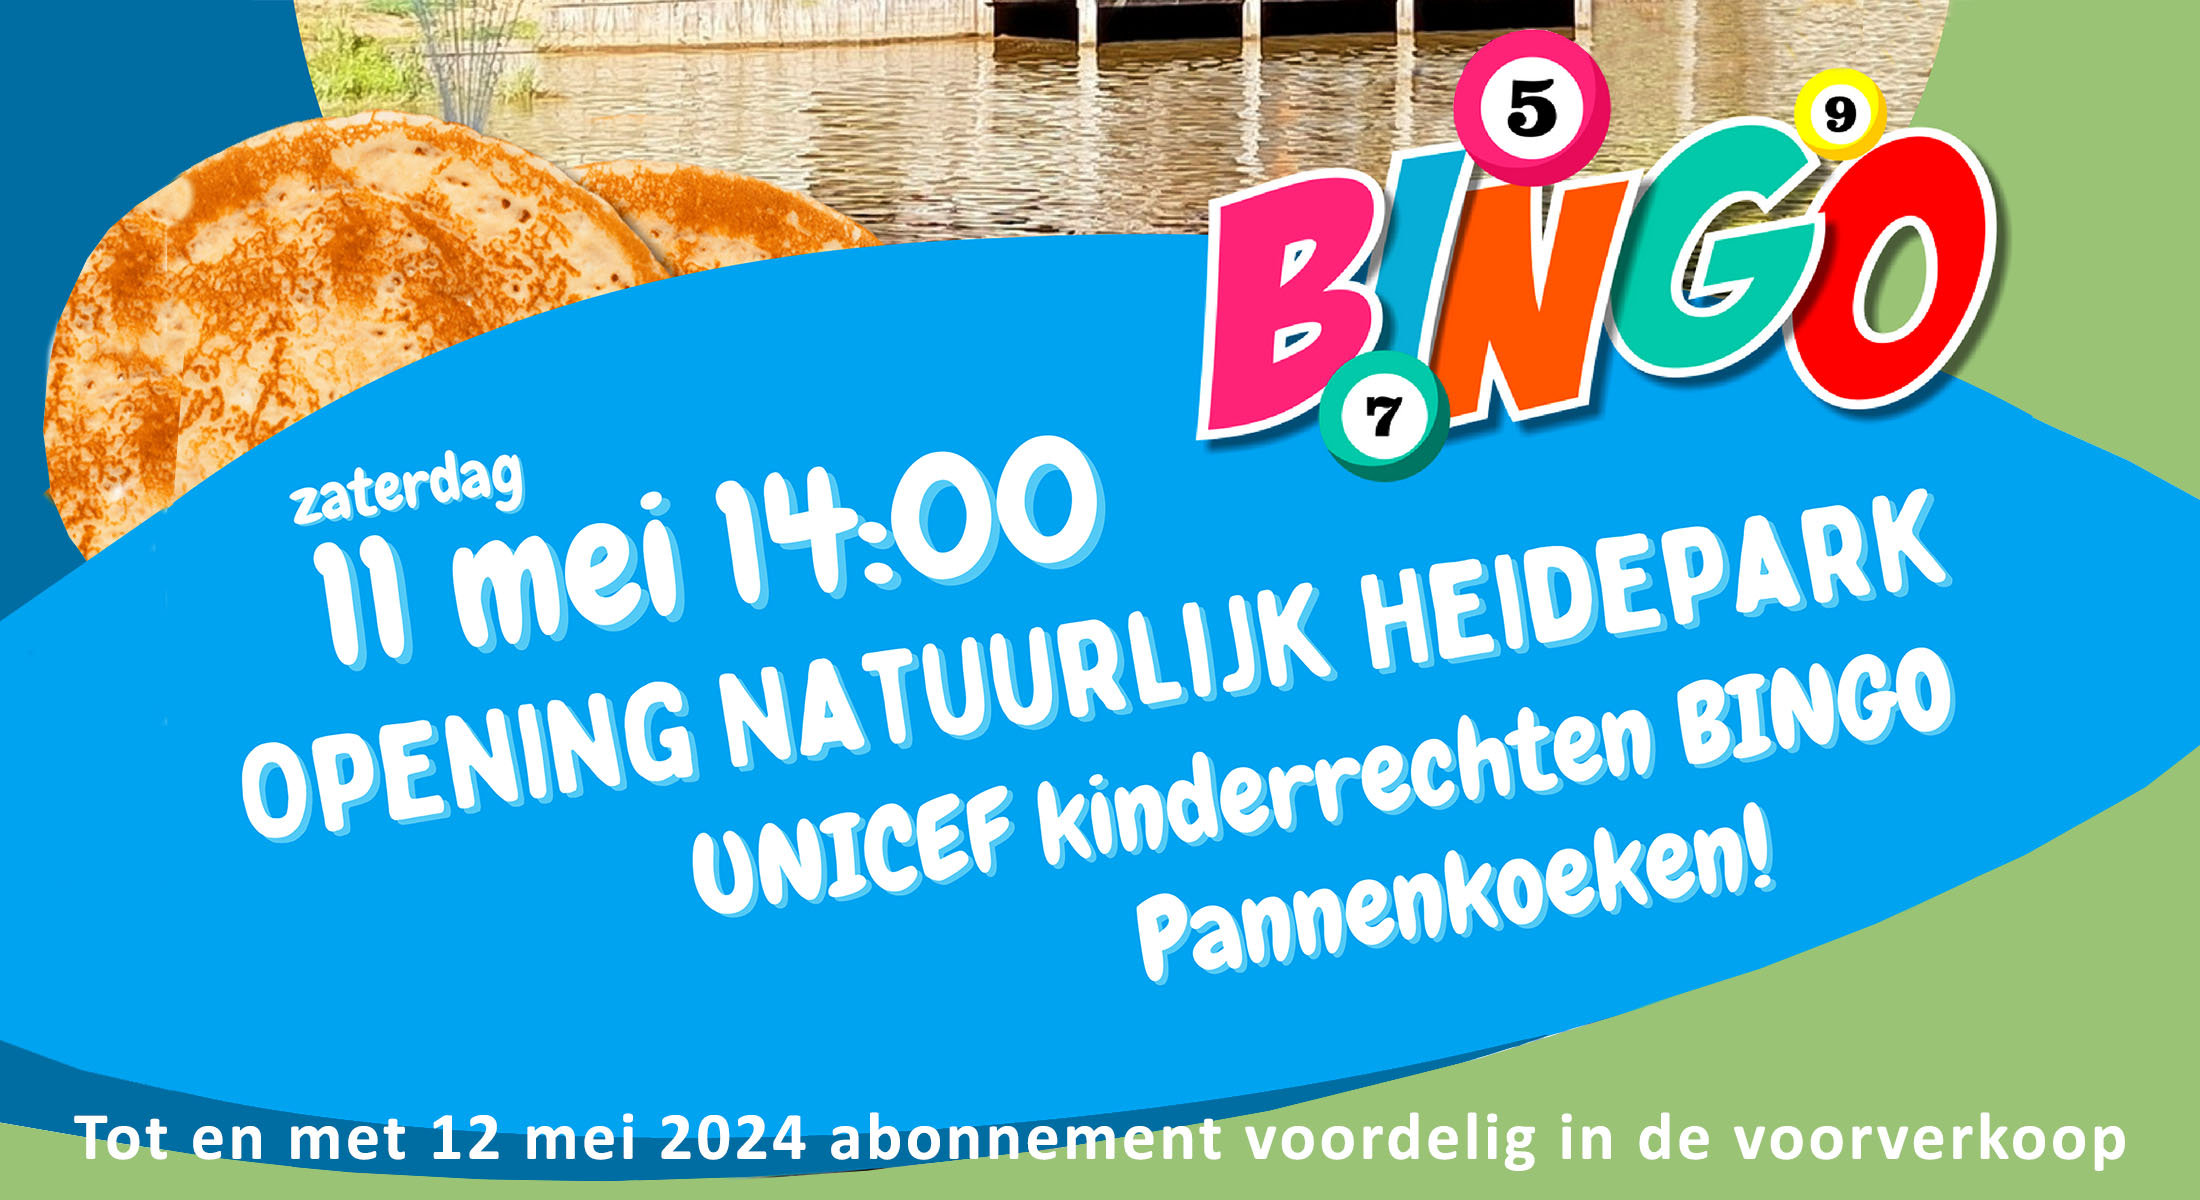 Kinderrechten Bingo tijdens opening zwemseizoen Natuurlijk Heidepark